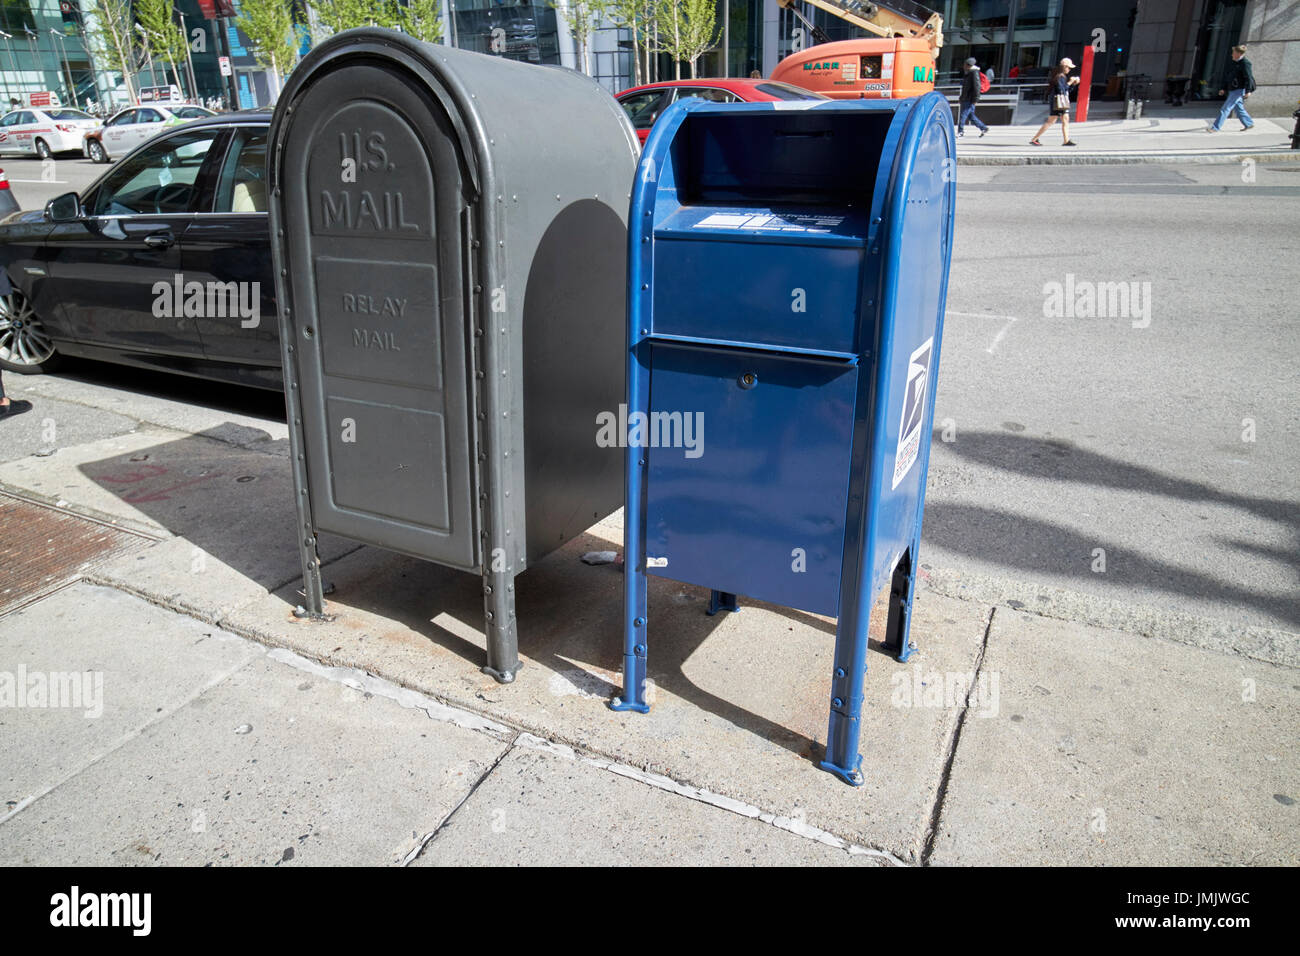 Le us postal service boîte aux lettres bleu et gris de la boîte de messagerie relais fort sur trottoir Boston USA Banque D'Images